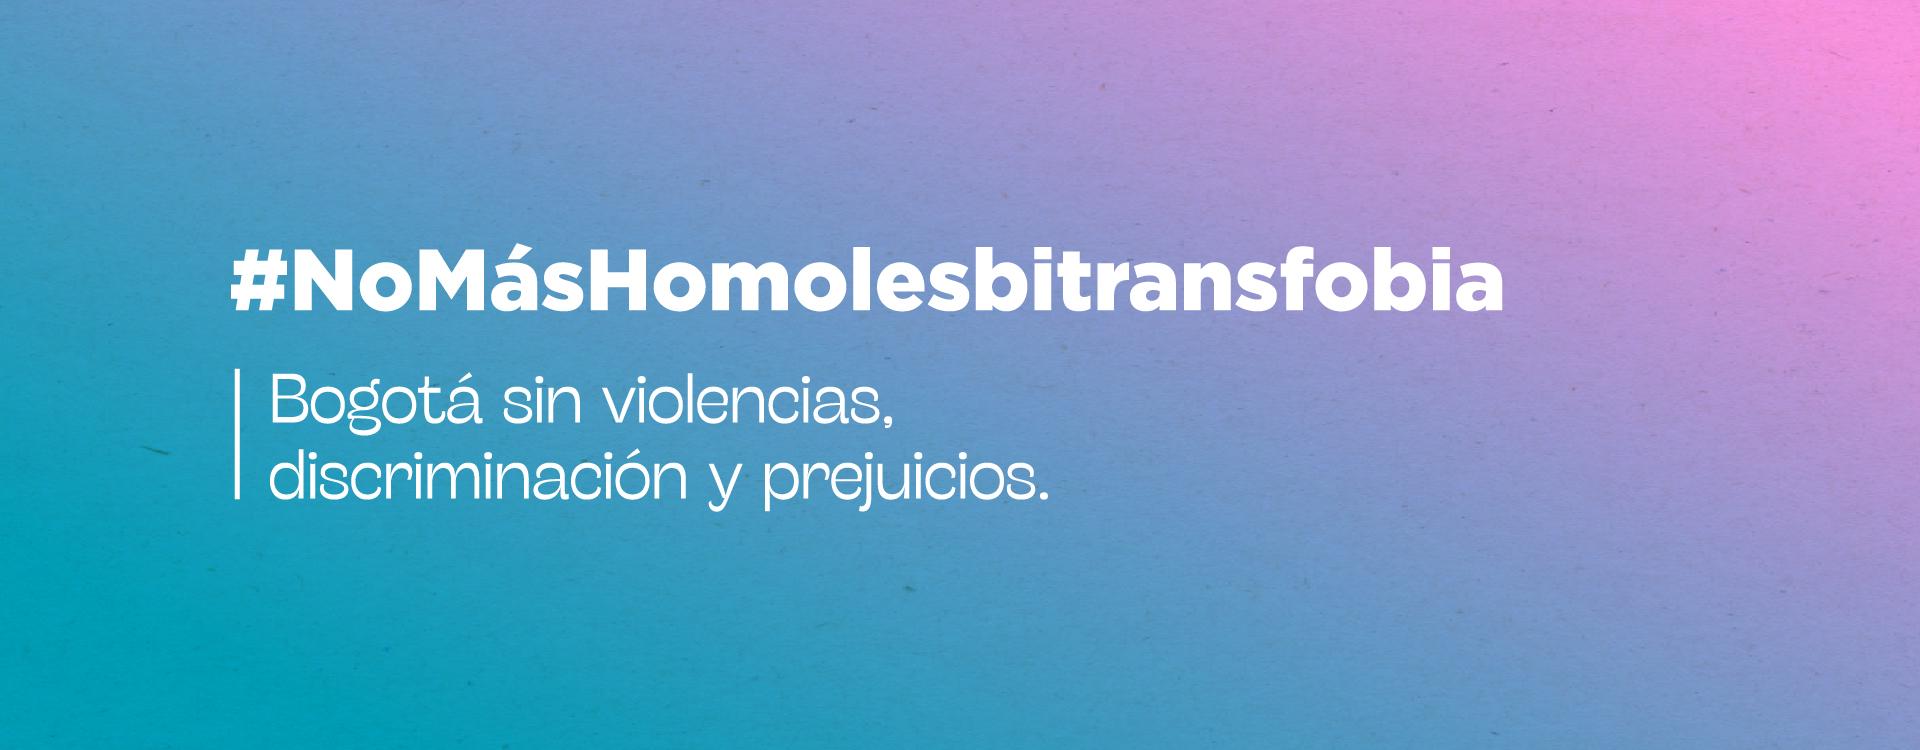 Imagen con colores #NoMásHomolesbitransfobia, Bogotá son violencias, discriminación prejuicios y 